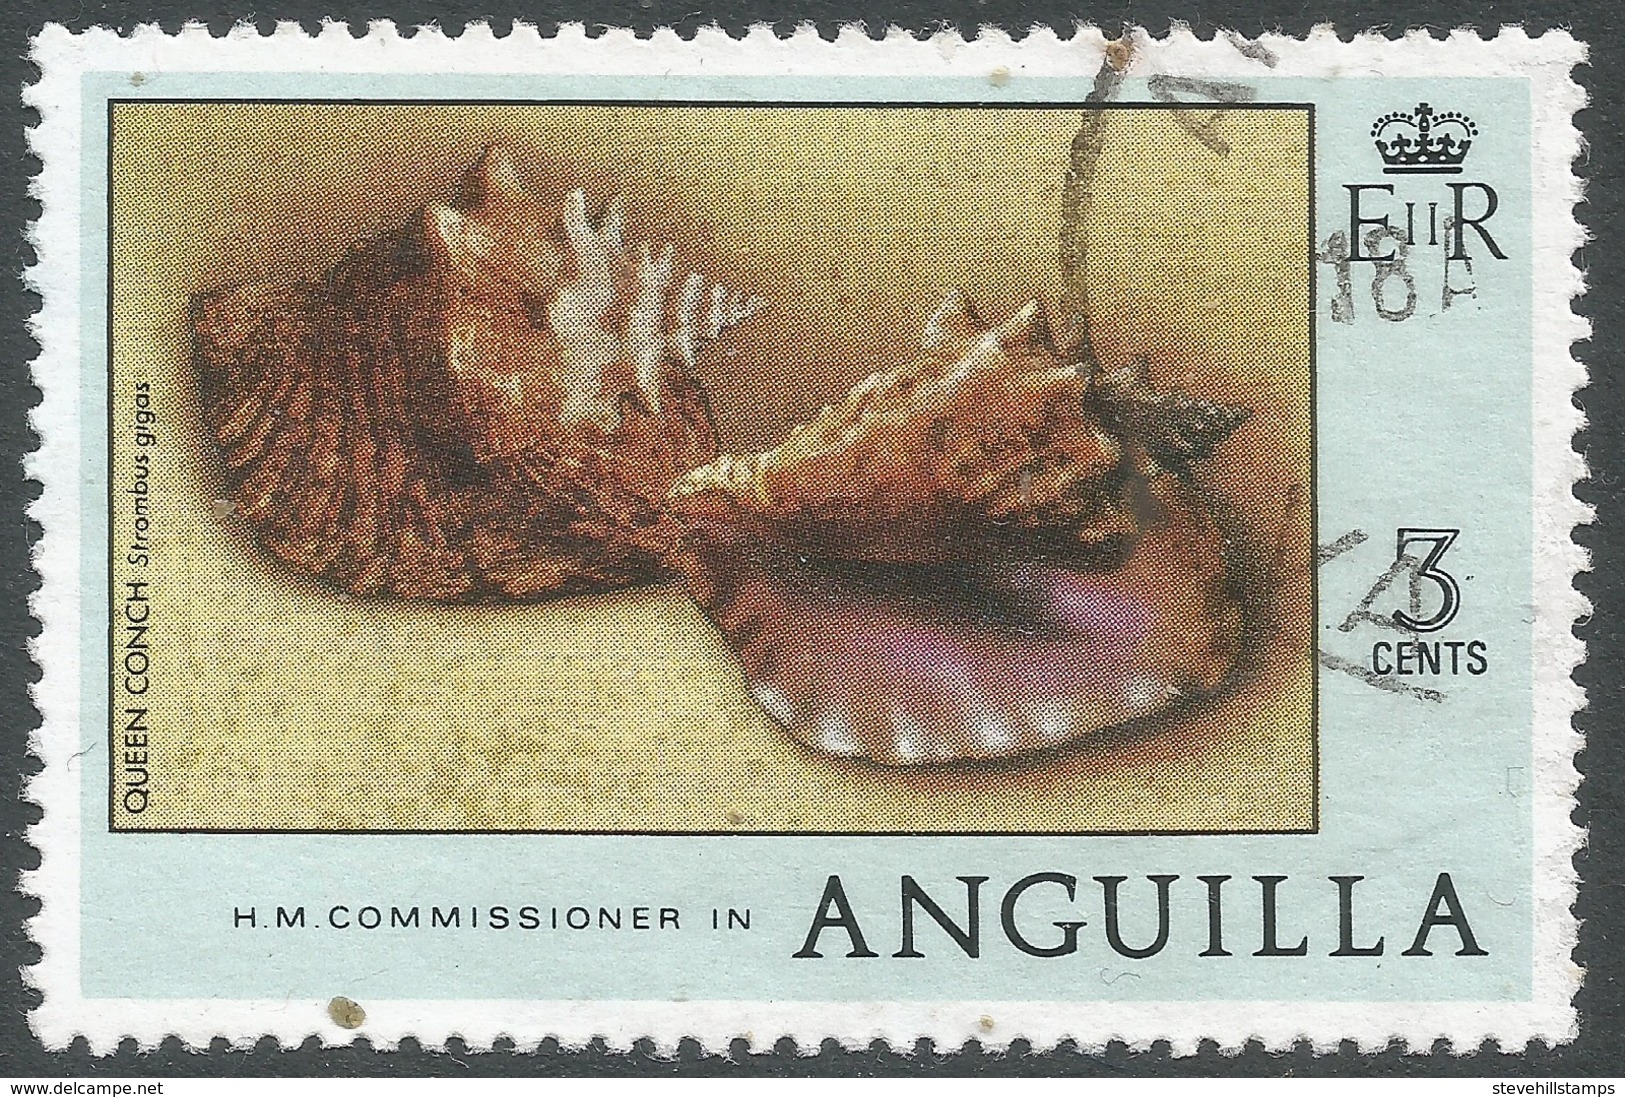 Anguilla. 1977 Wildlife. 3c Used. SG 276 - Anguilla (1968-...)